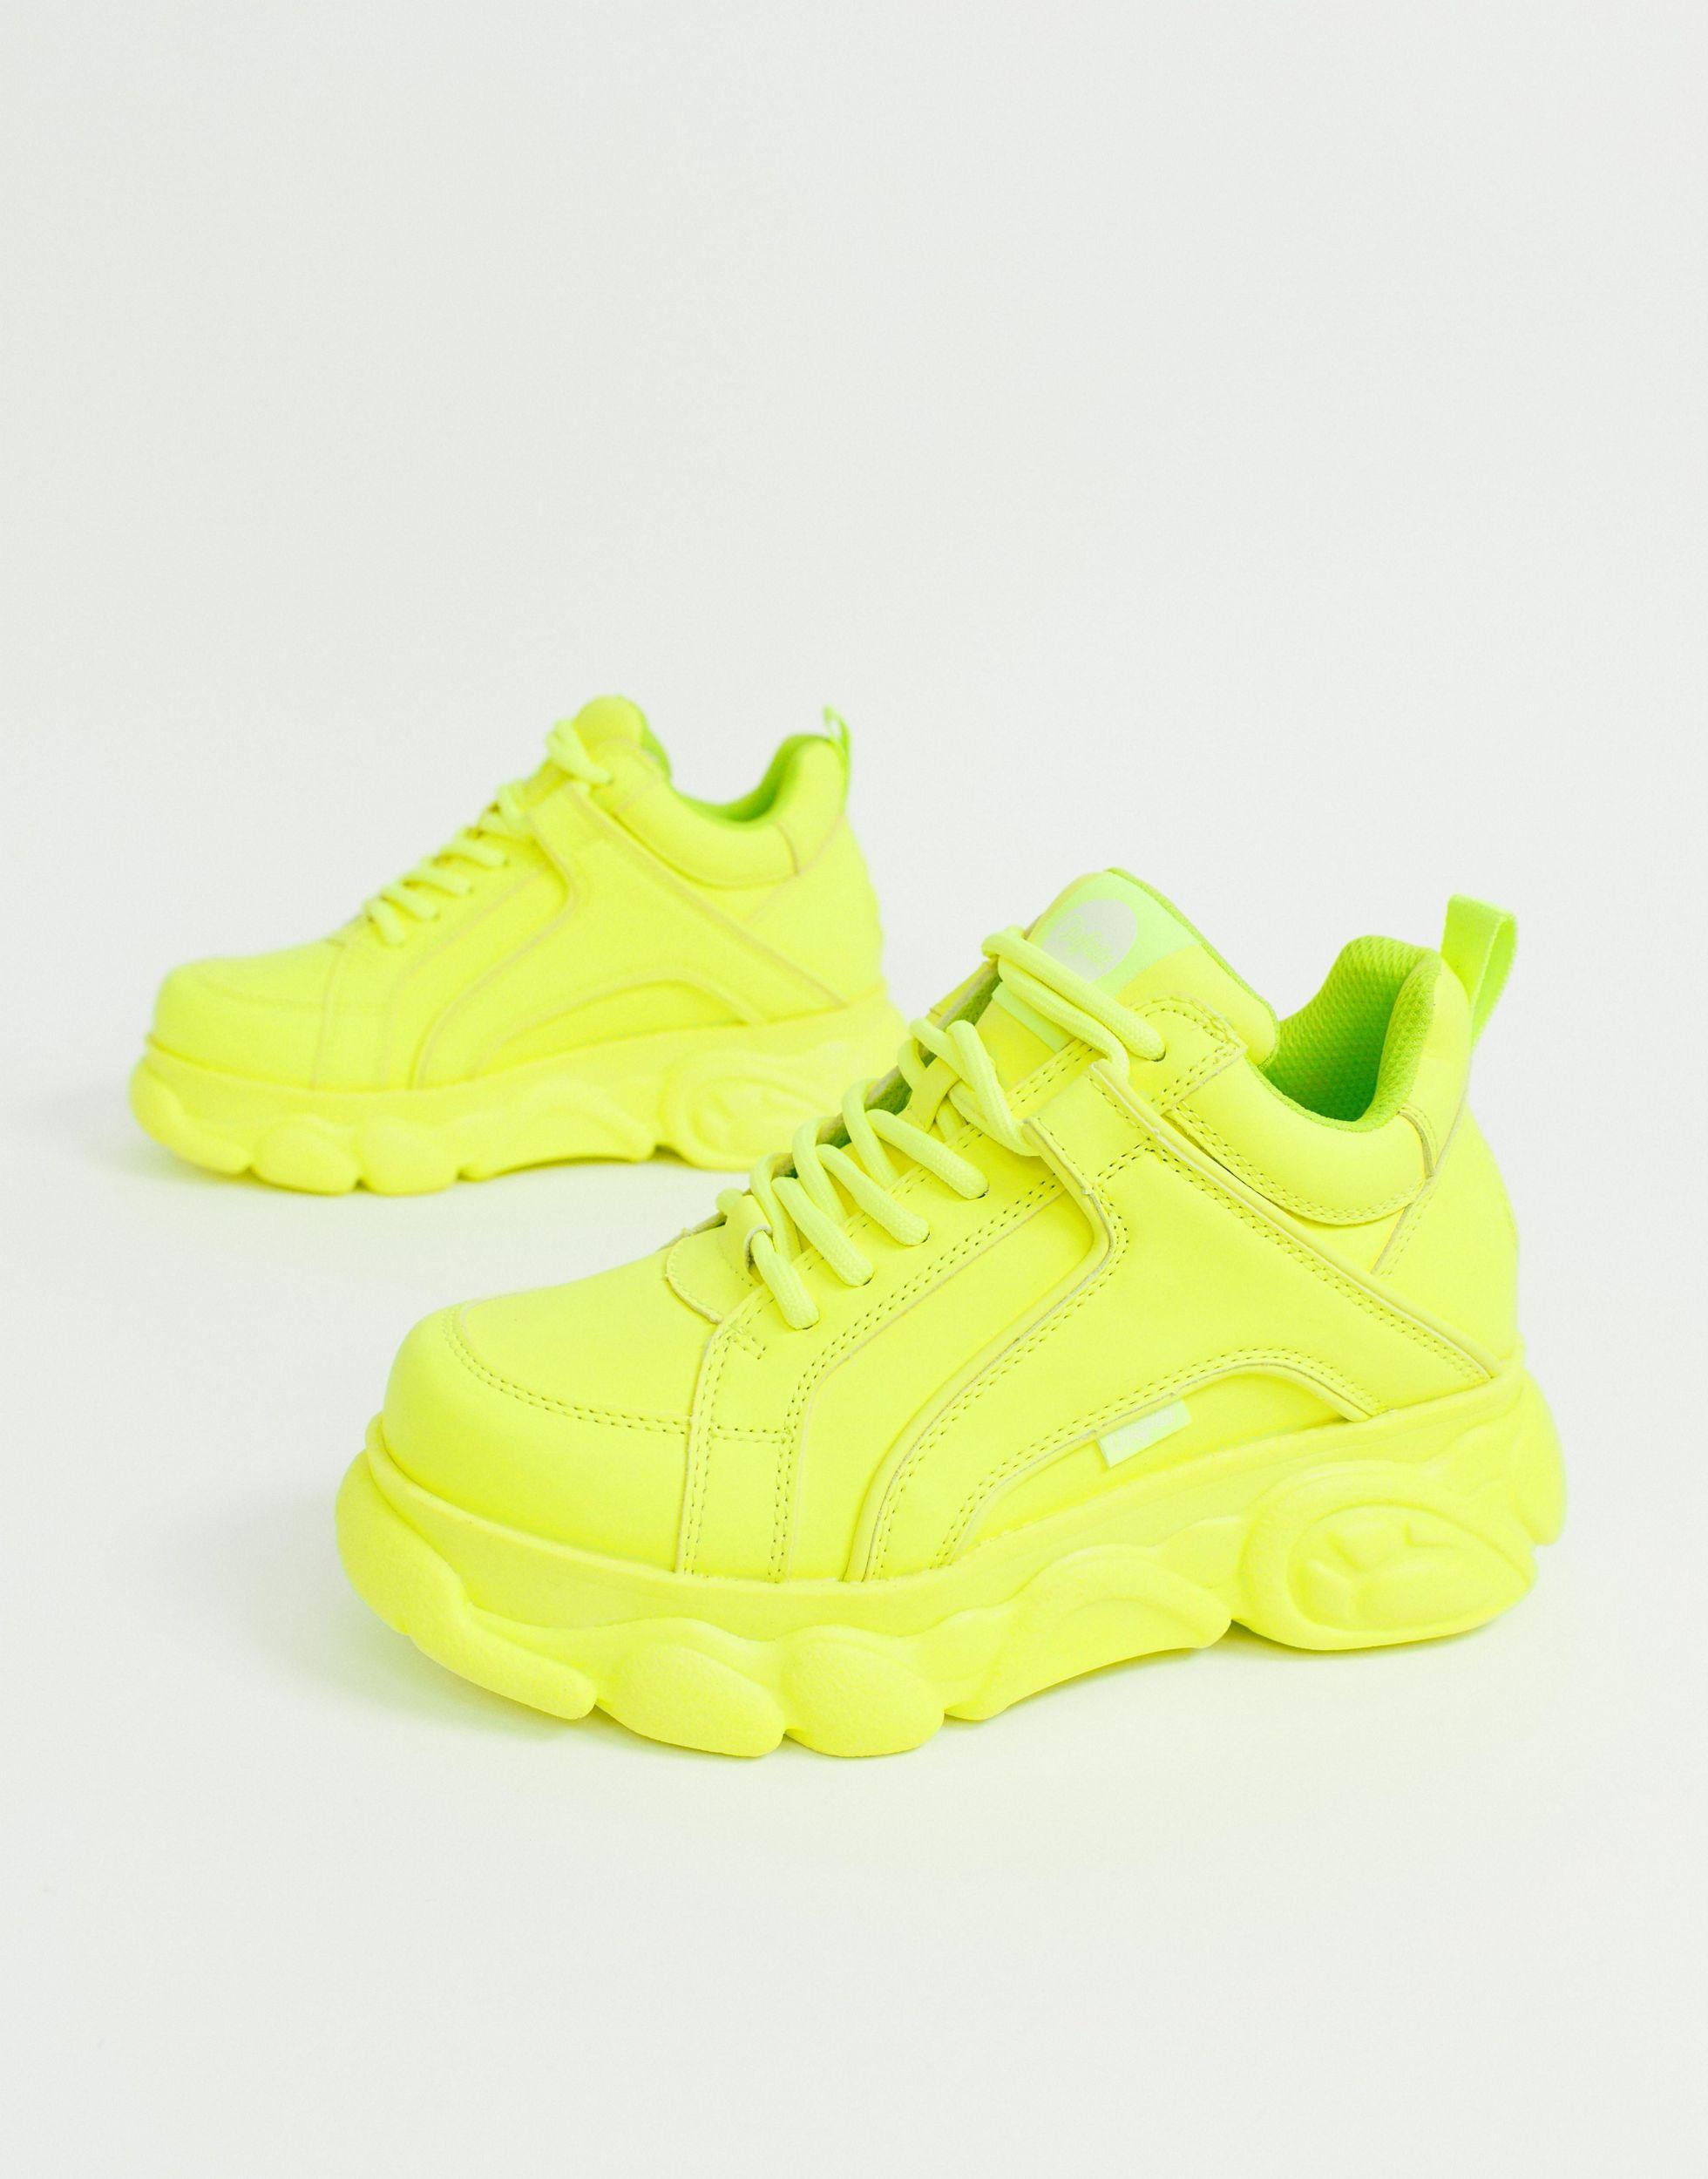 neon yellow platform sneakers